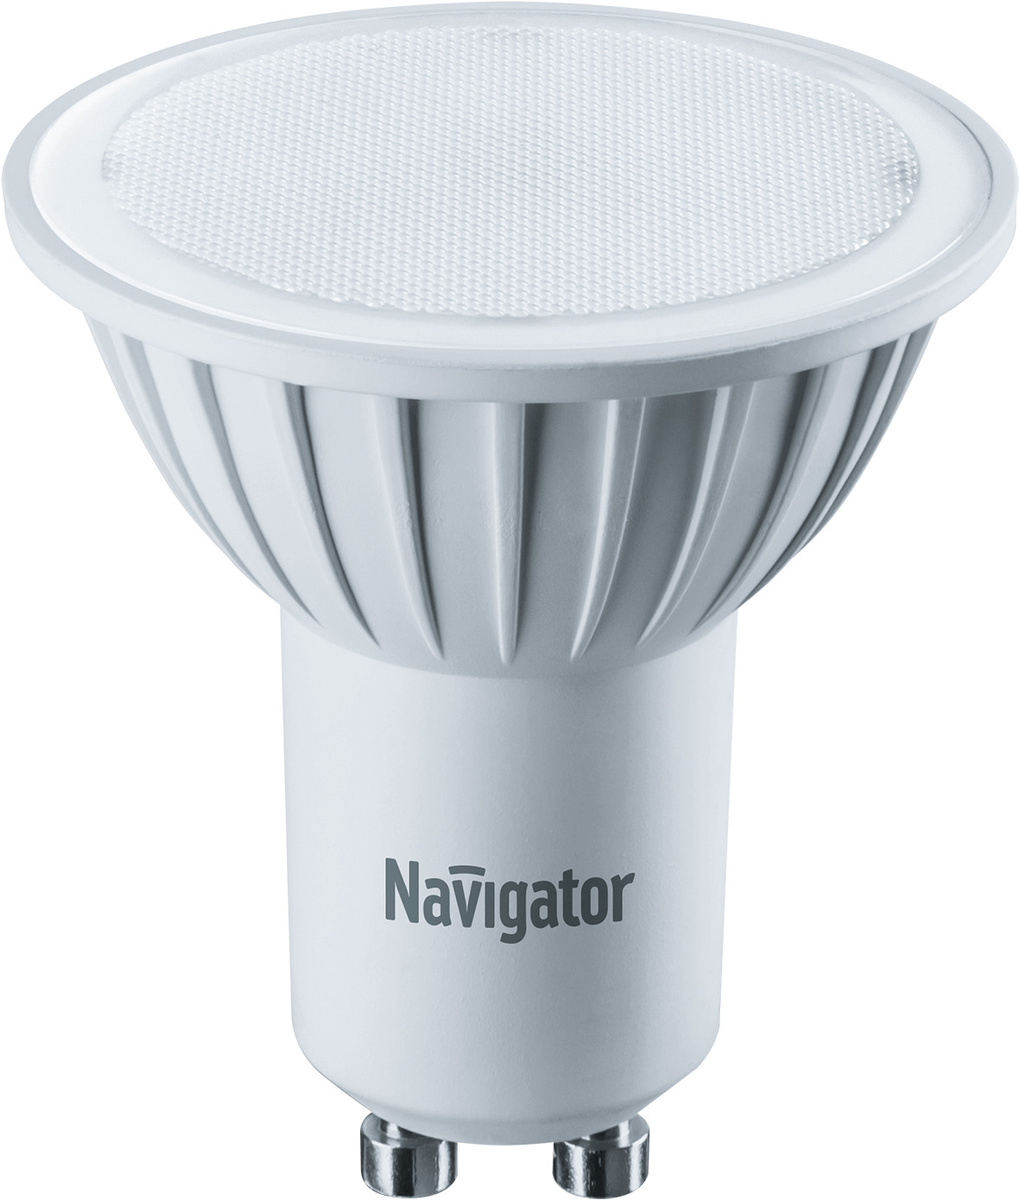 Лампочка Navigator NLL-PAR16-7-230-3K-GU10, Теплый белый свет, 7 Вт, Светодиодная, 10 шт.  #1